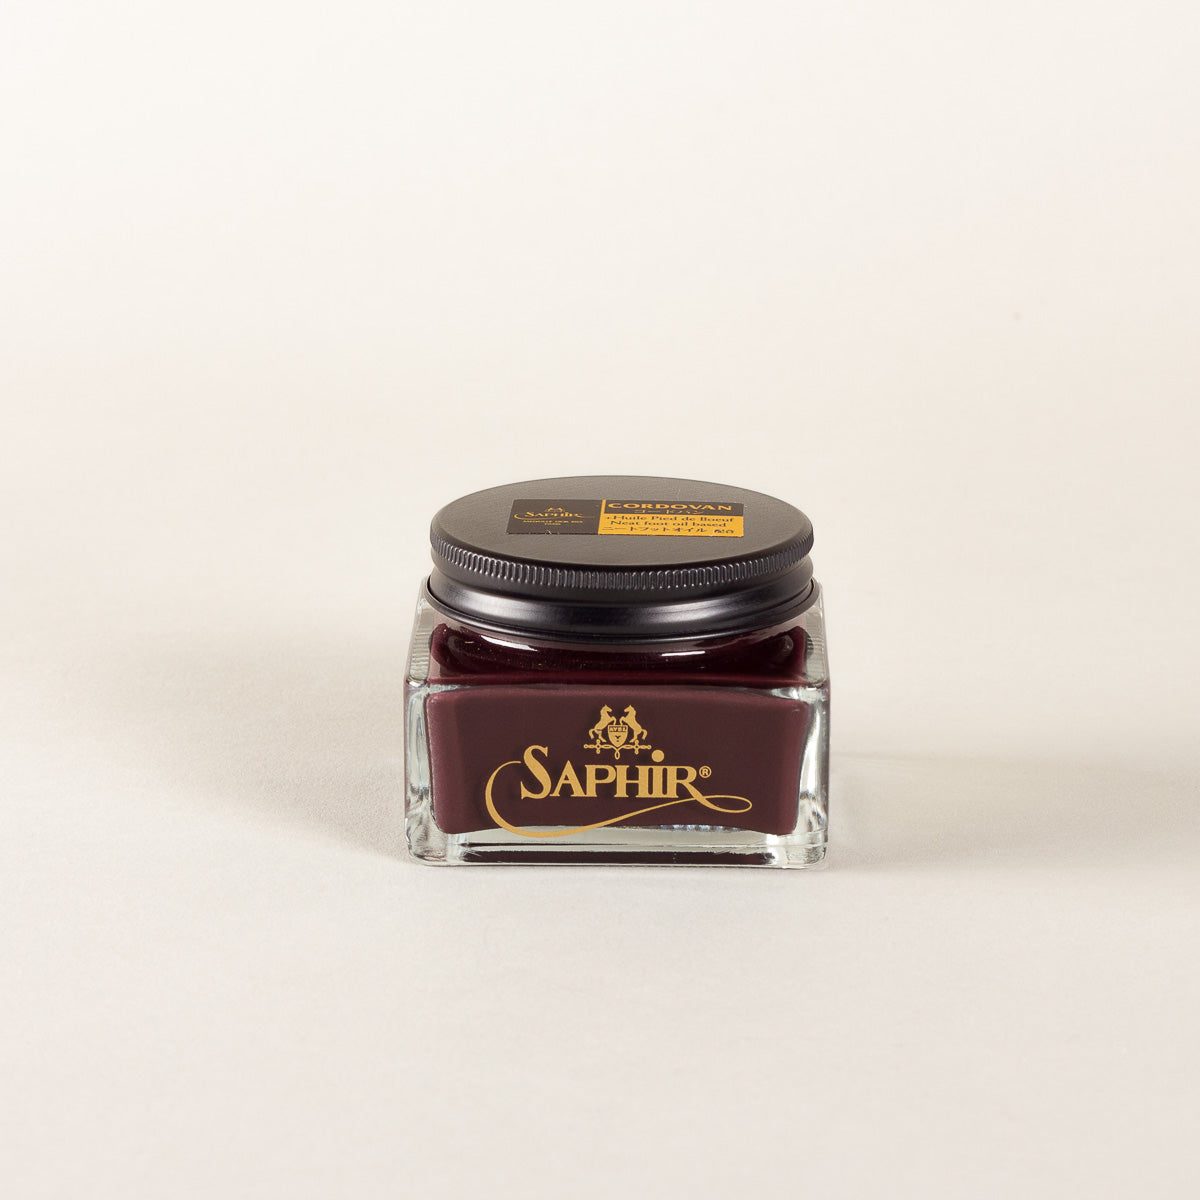 Saphir Médaille d'Or Cordovan cream